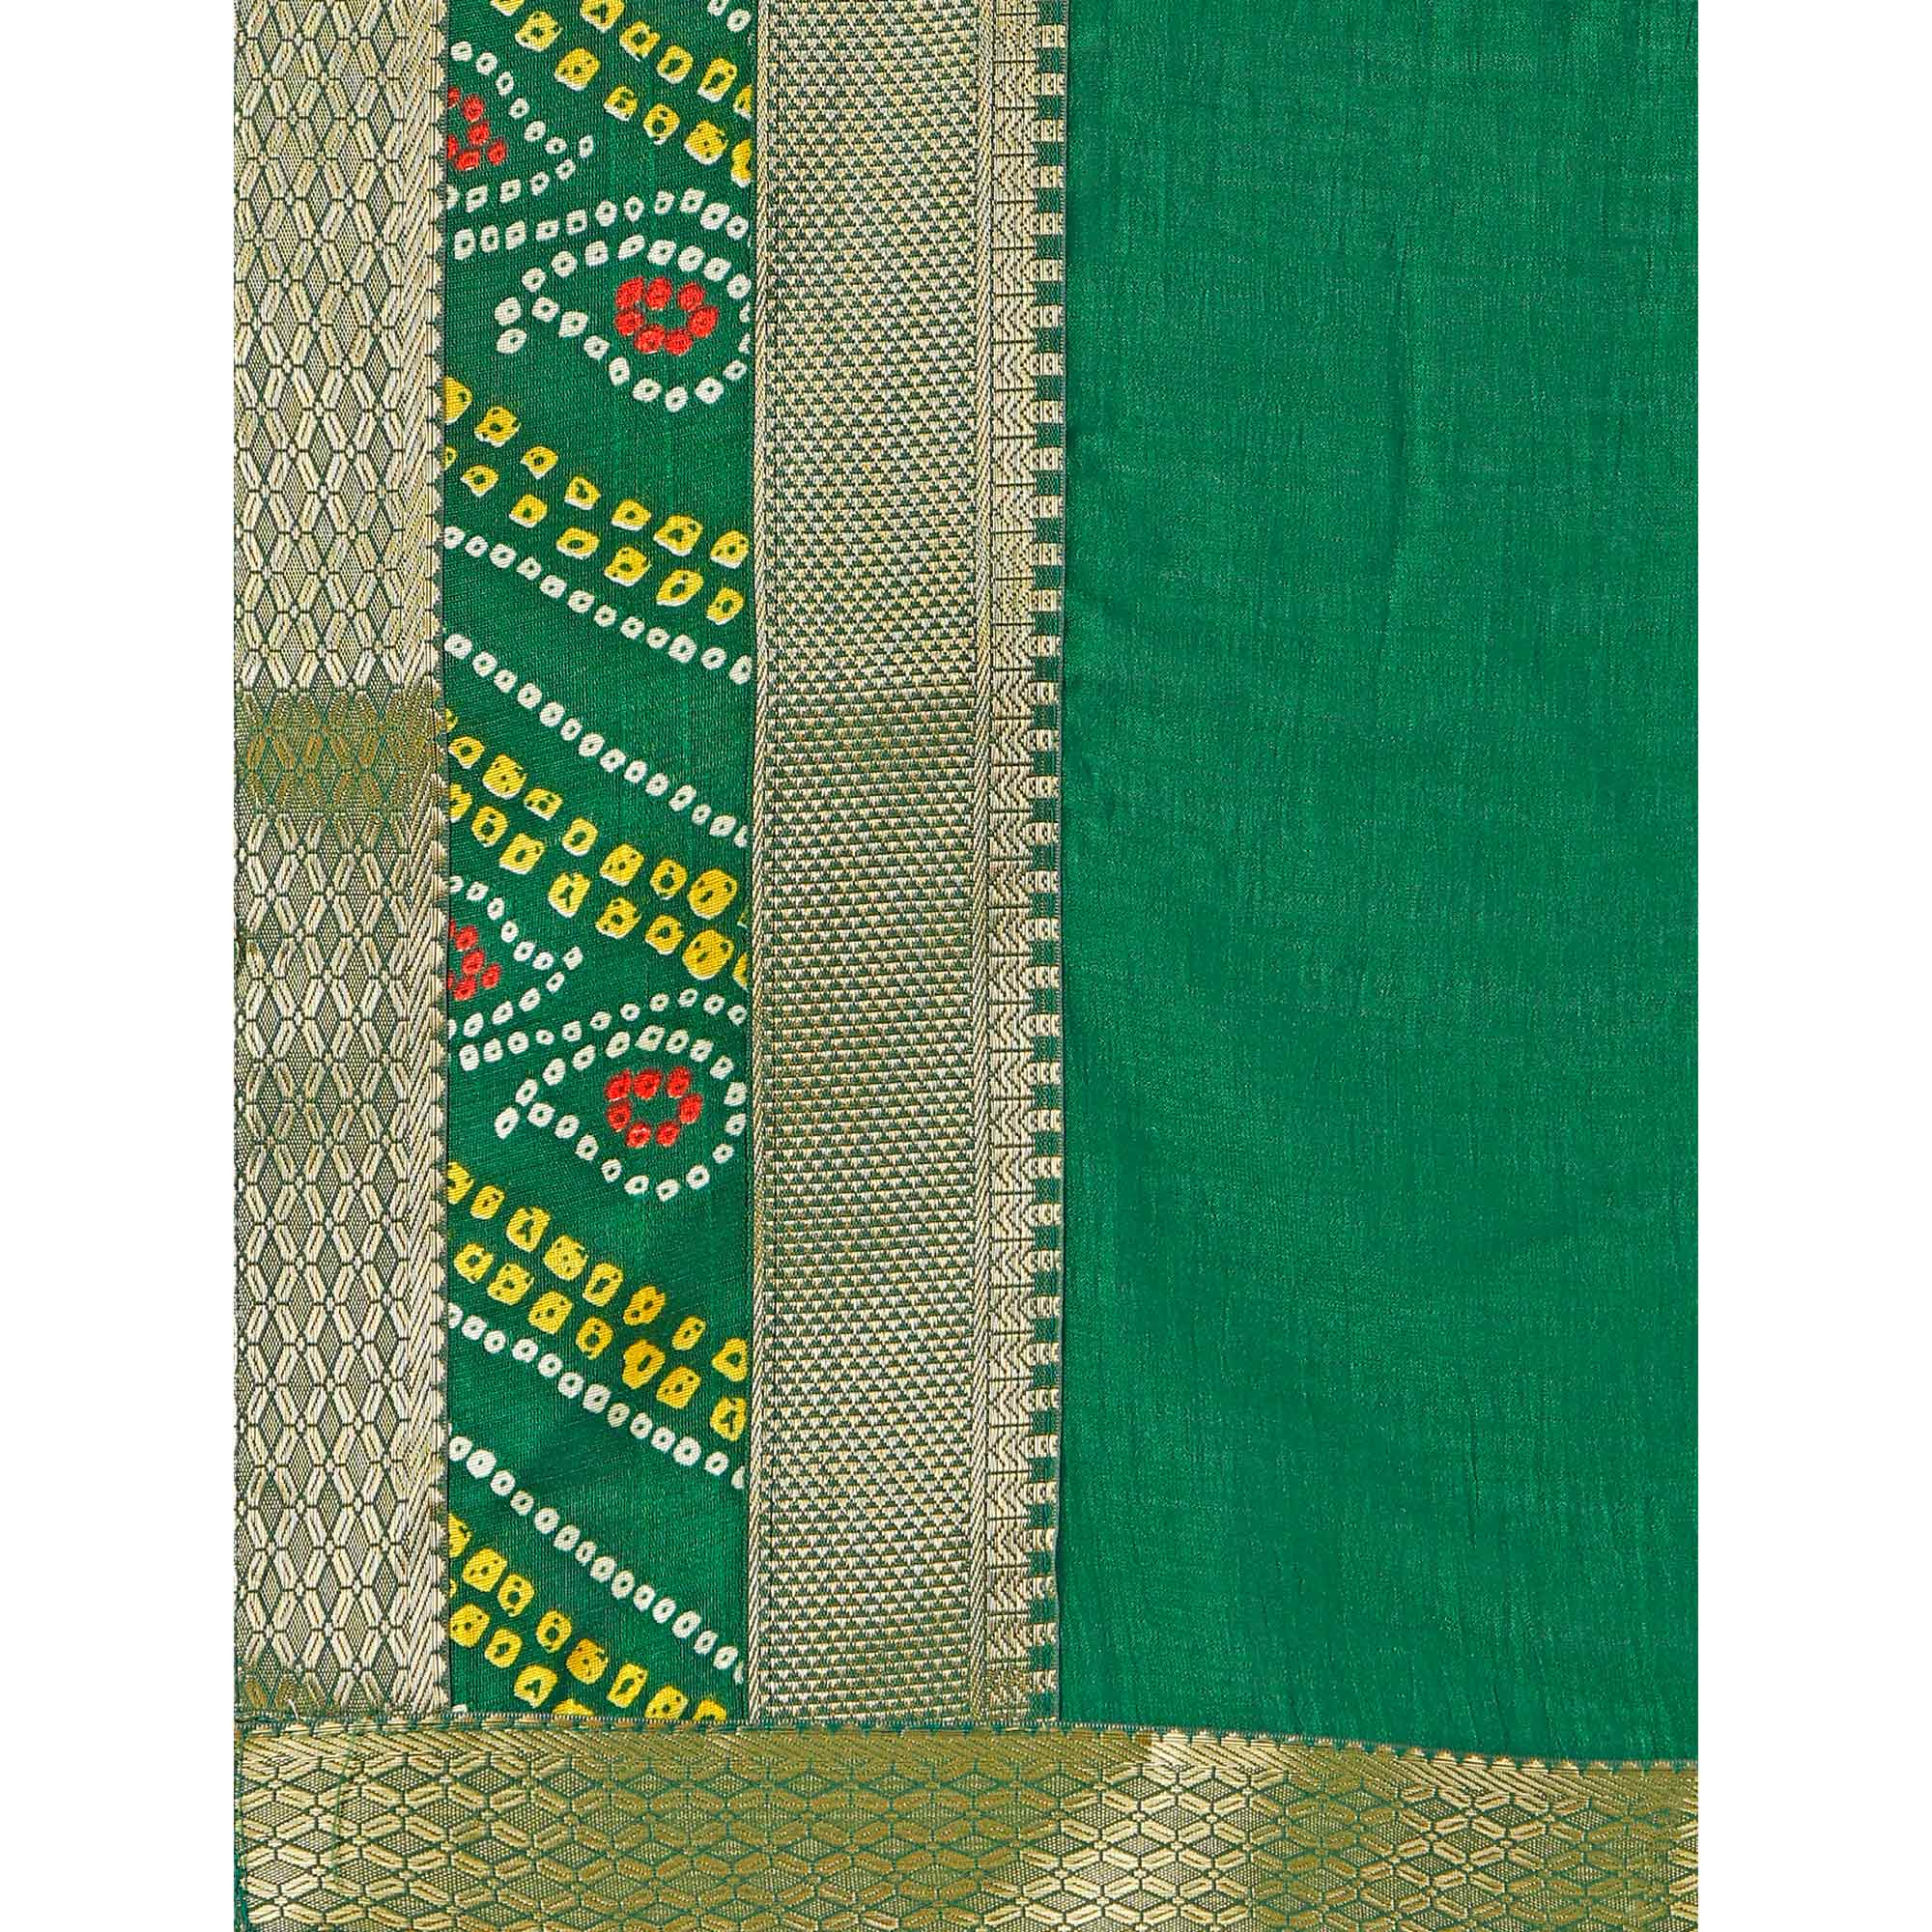 Green Solid Vichitra Silk Saree